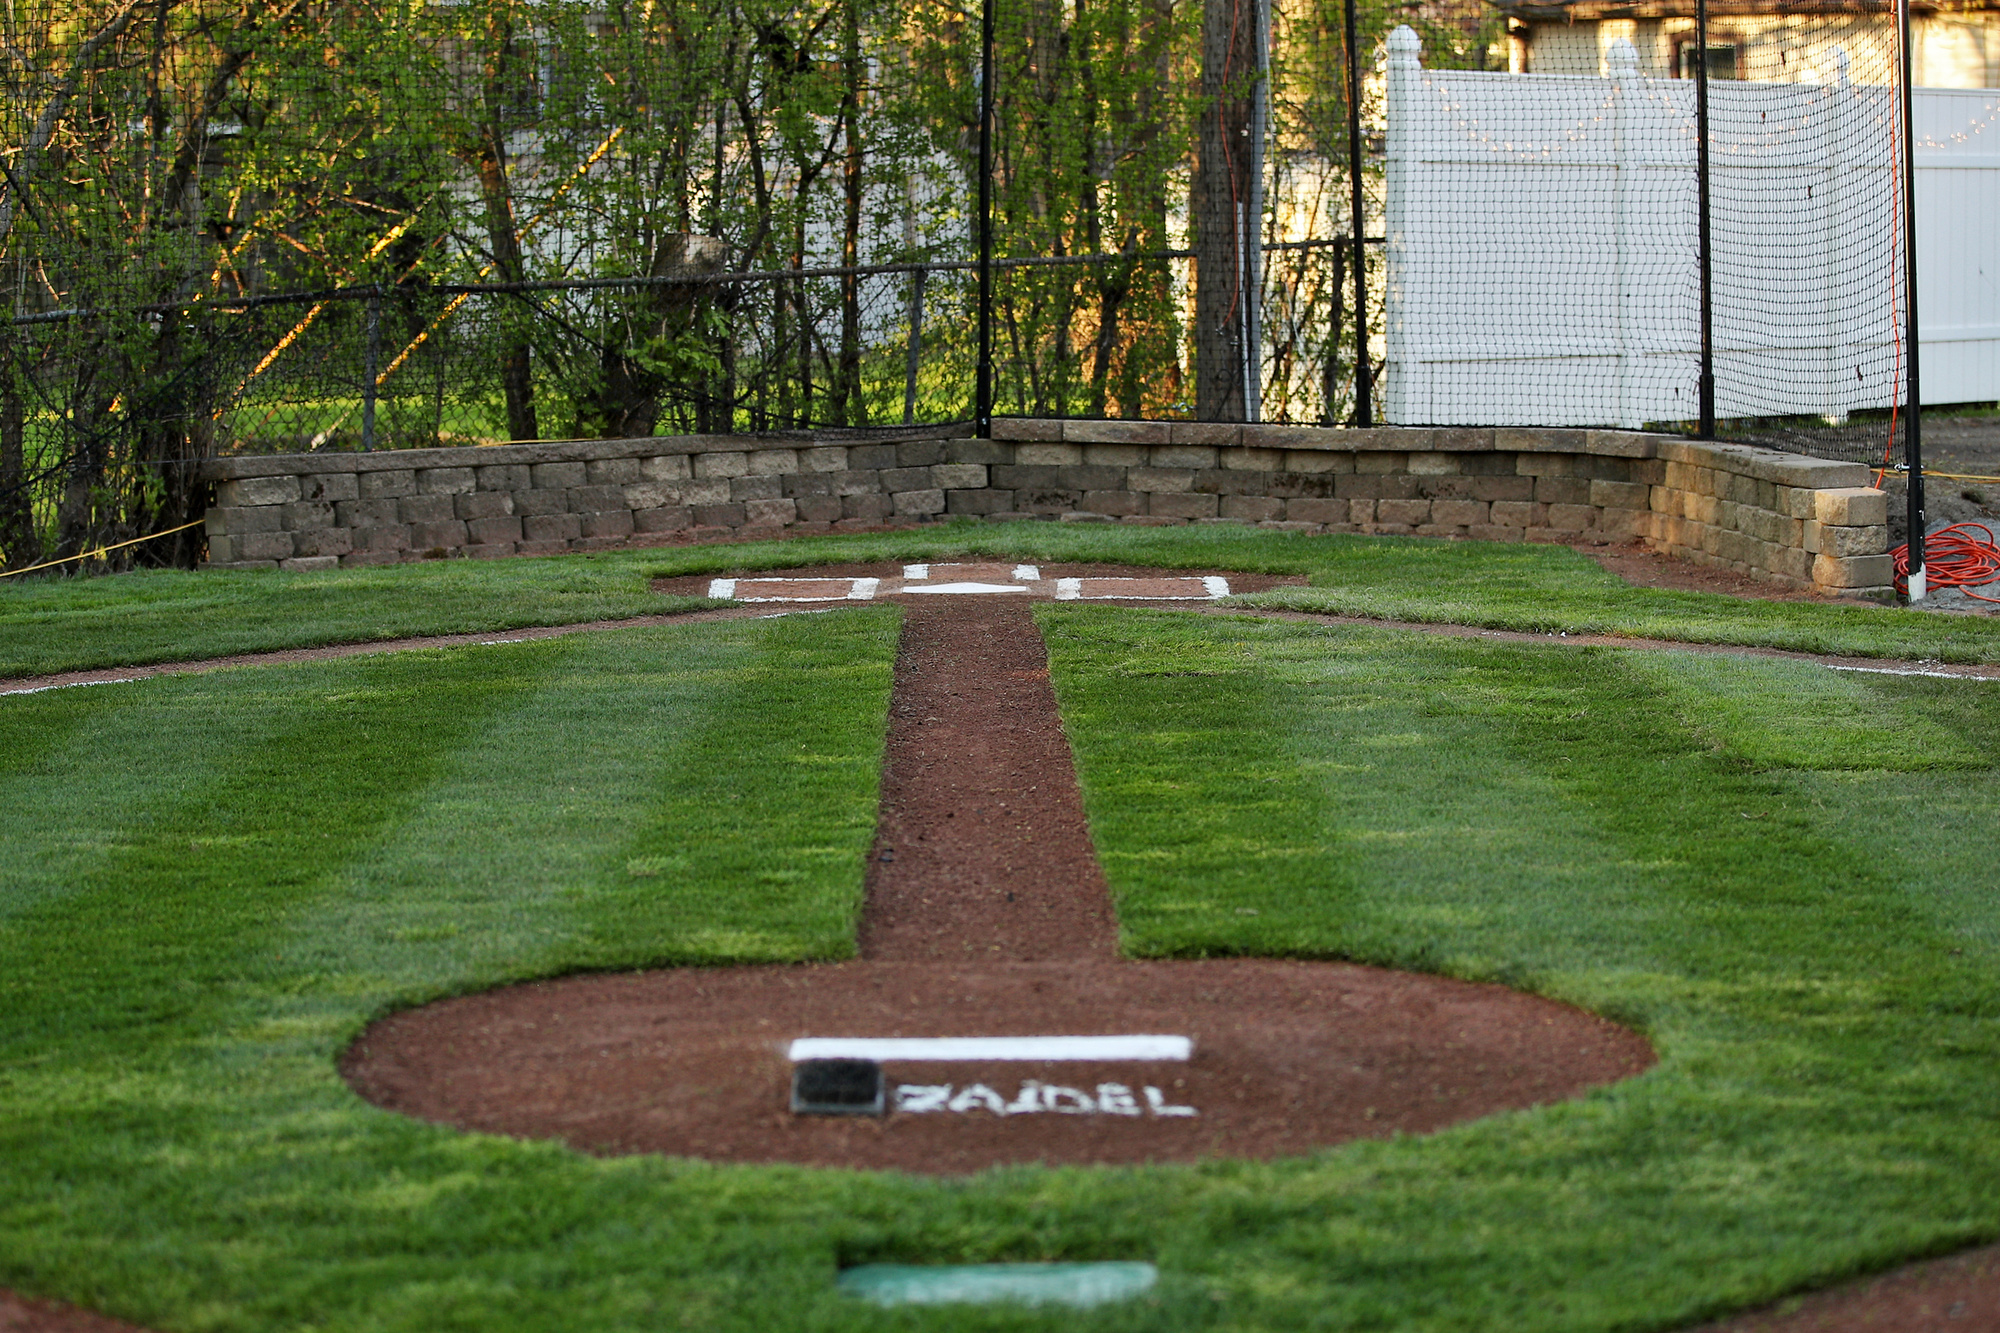 backyard baseball real life